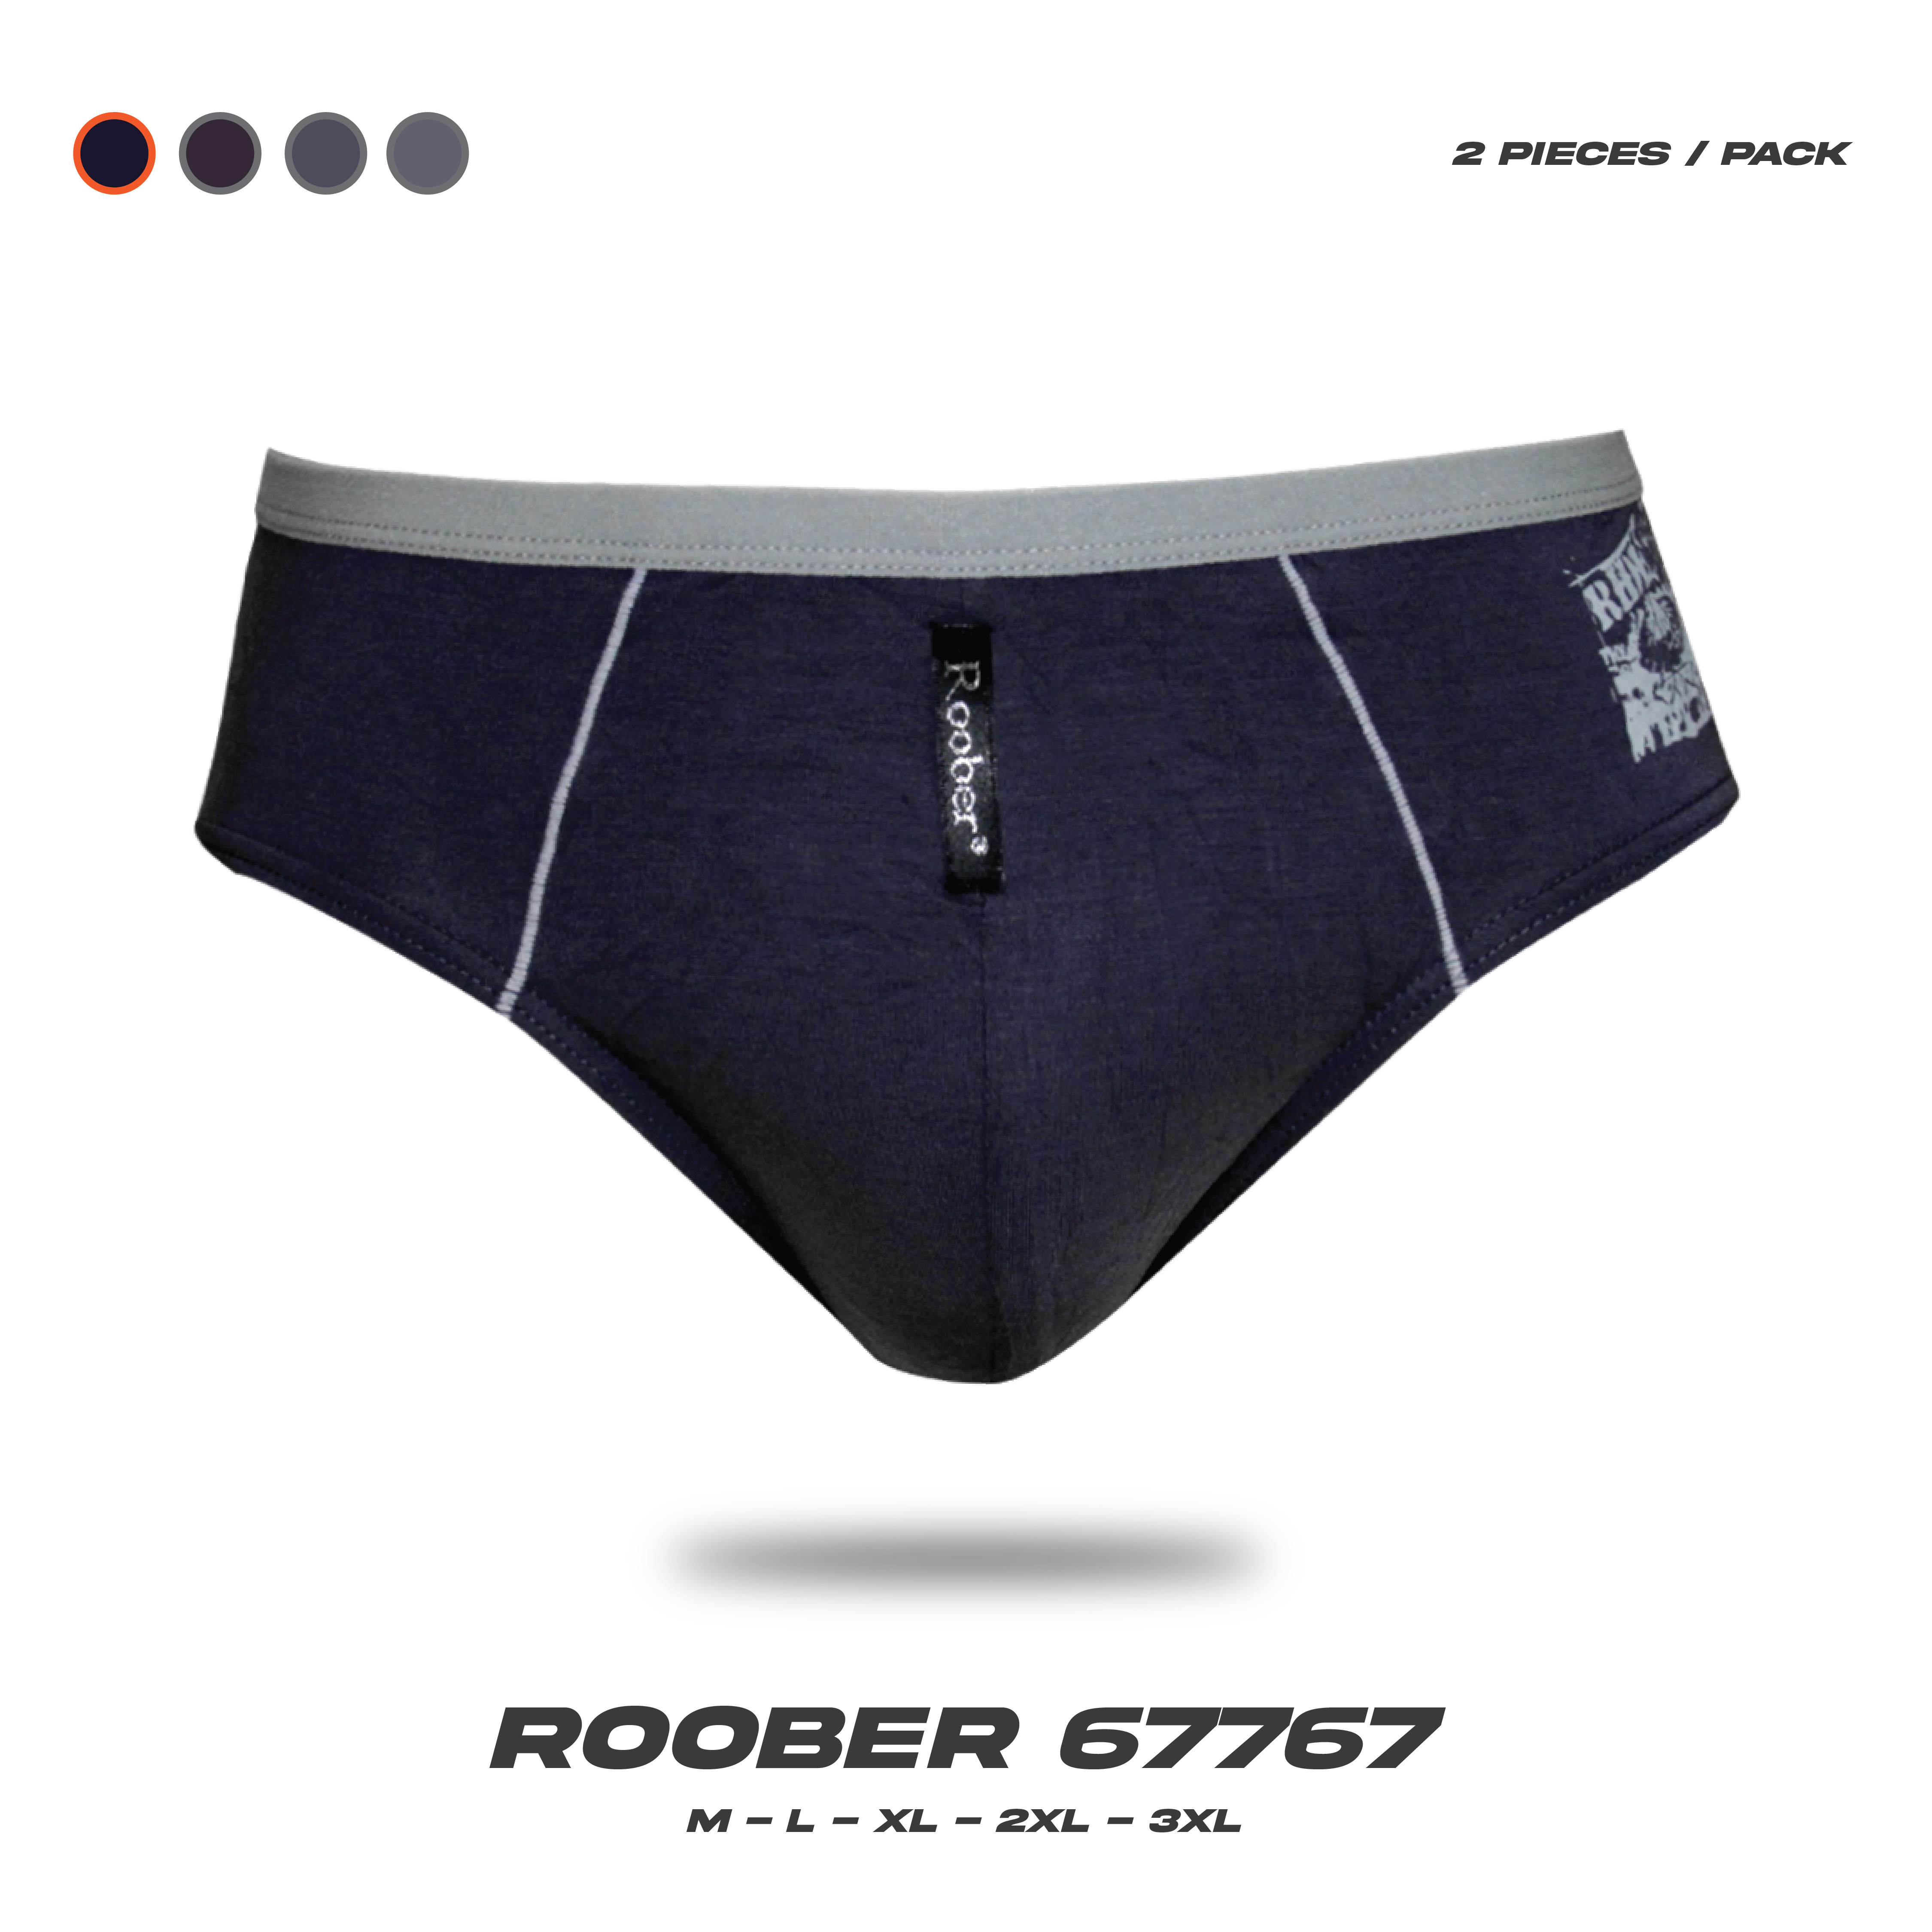 Jual Celana Boxer Pria Roober Import RB 67258 ISI-2 PCS - Kota